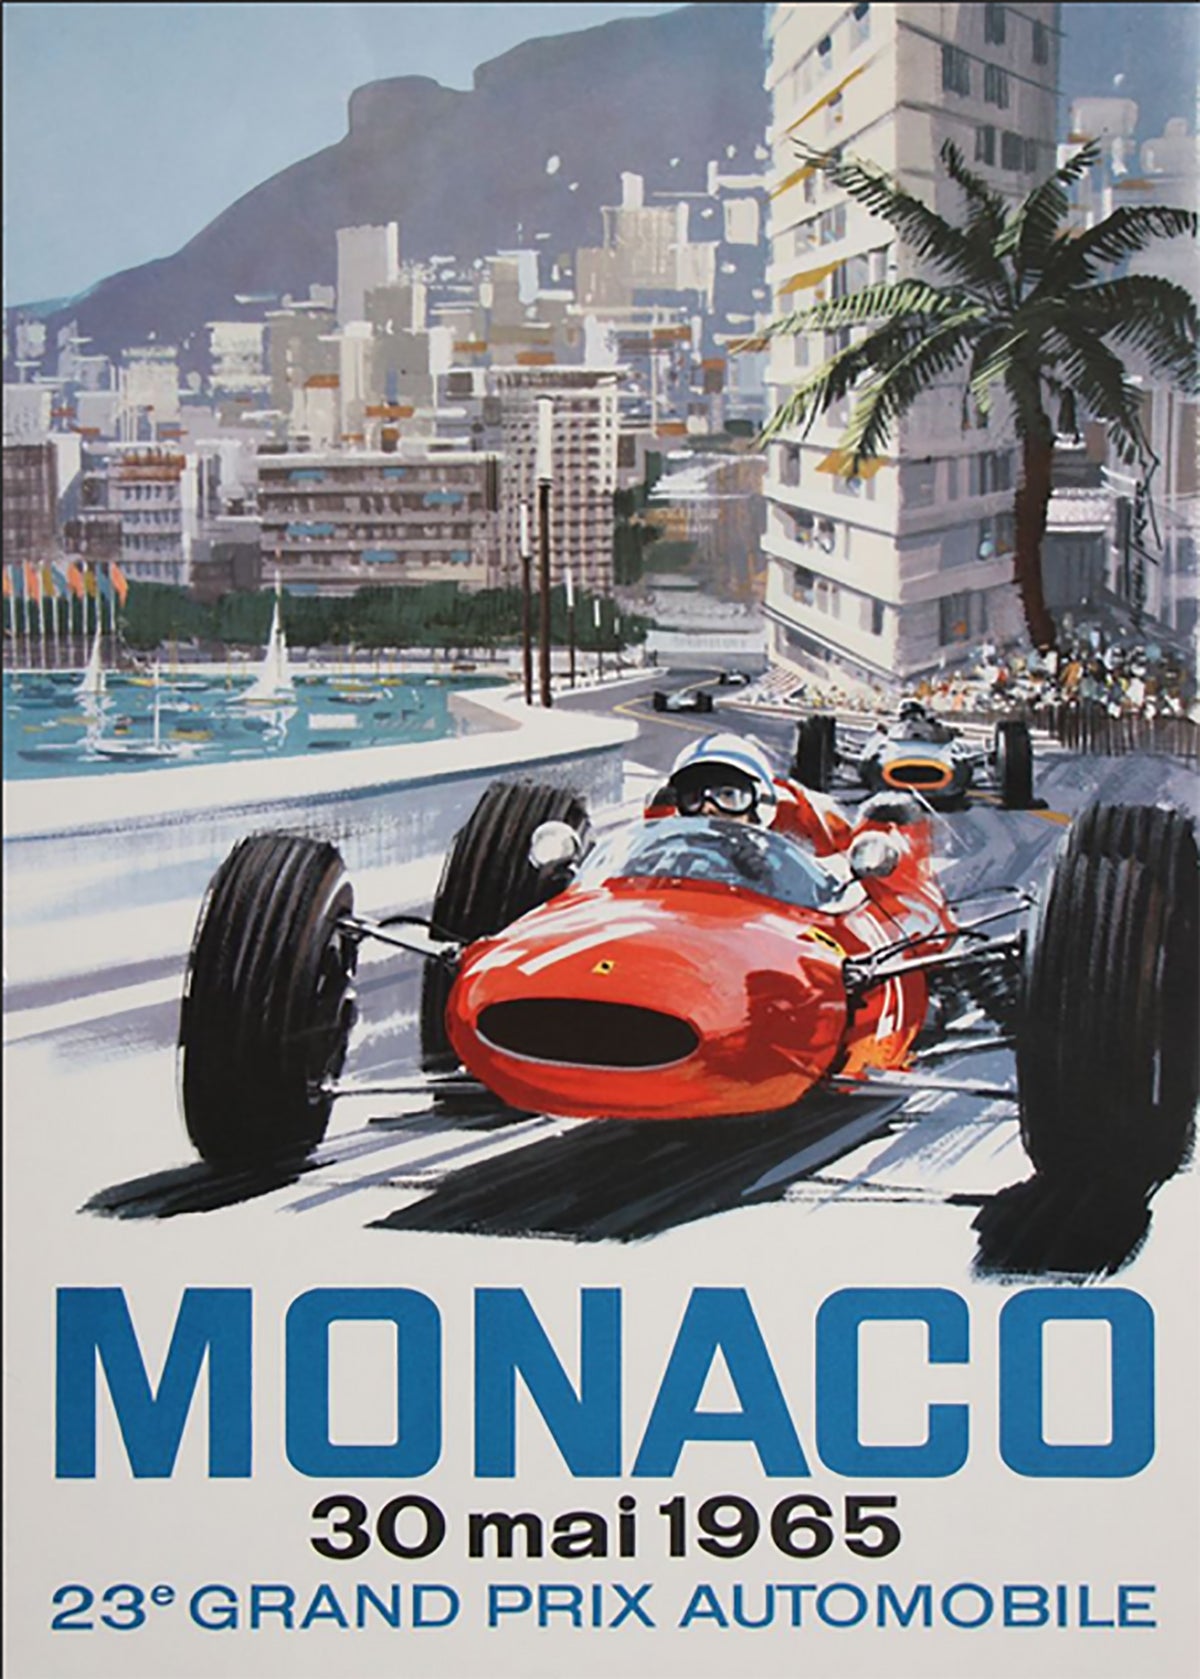 TPFLiving Poster Leinwand / Berühmte Rennen - Vintage - Großer Preis von Monaco 2. Juni 1952 / Verschiedene Größen - OHNE Rahmen - Modell 7